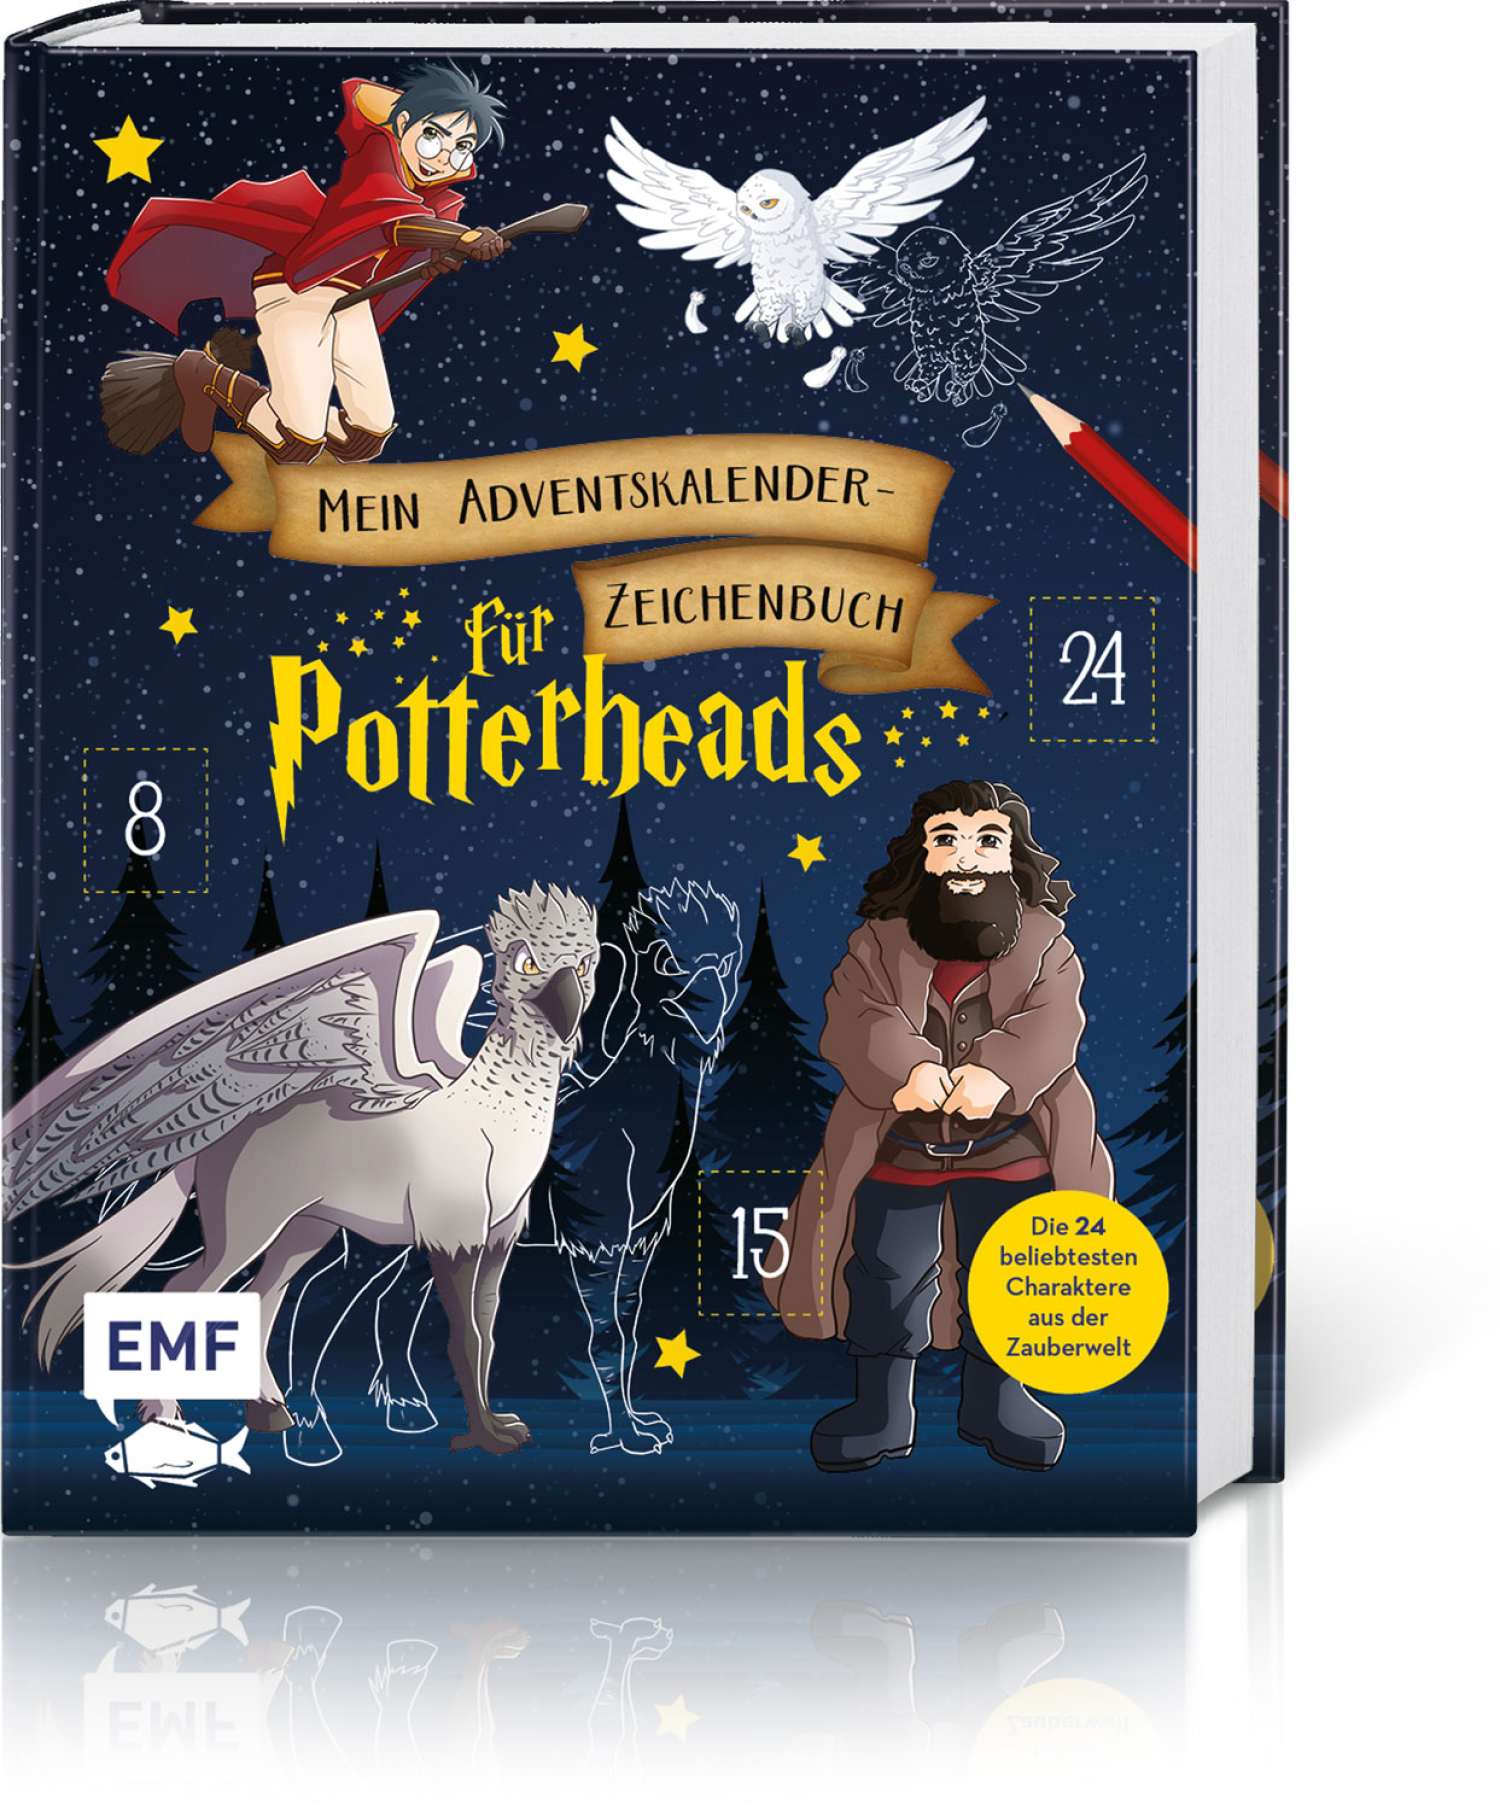 Mein Adventskalender-Zeichenbuch für Potterheads, Produktbild 1